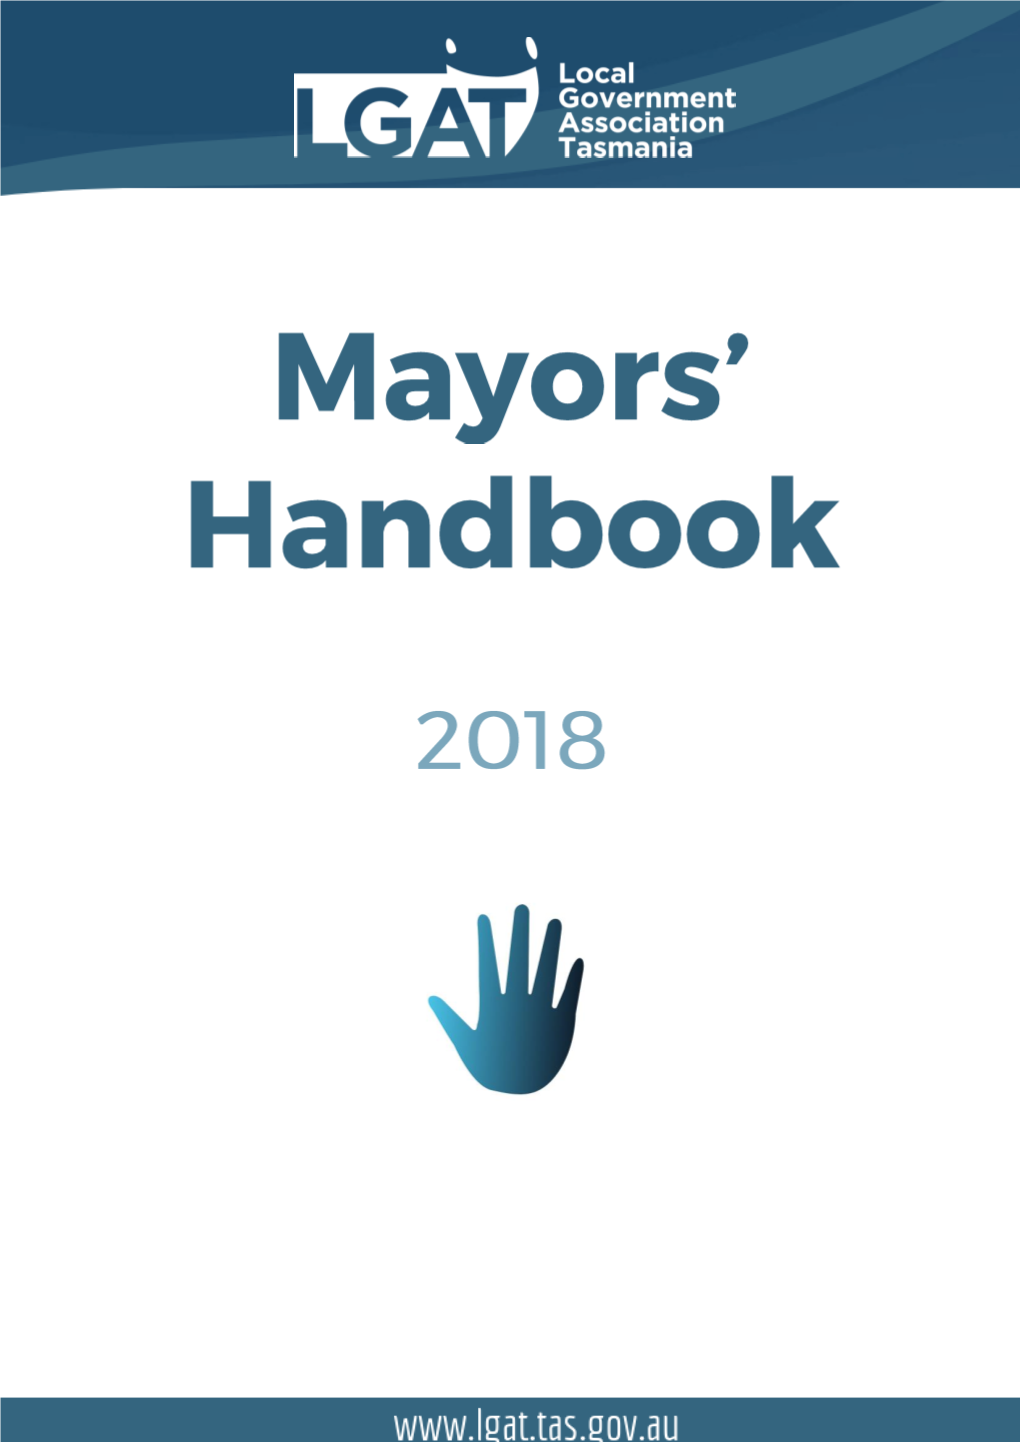 Mayors' Handbook 2018